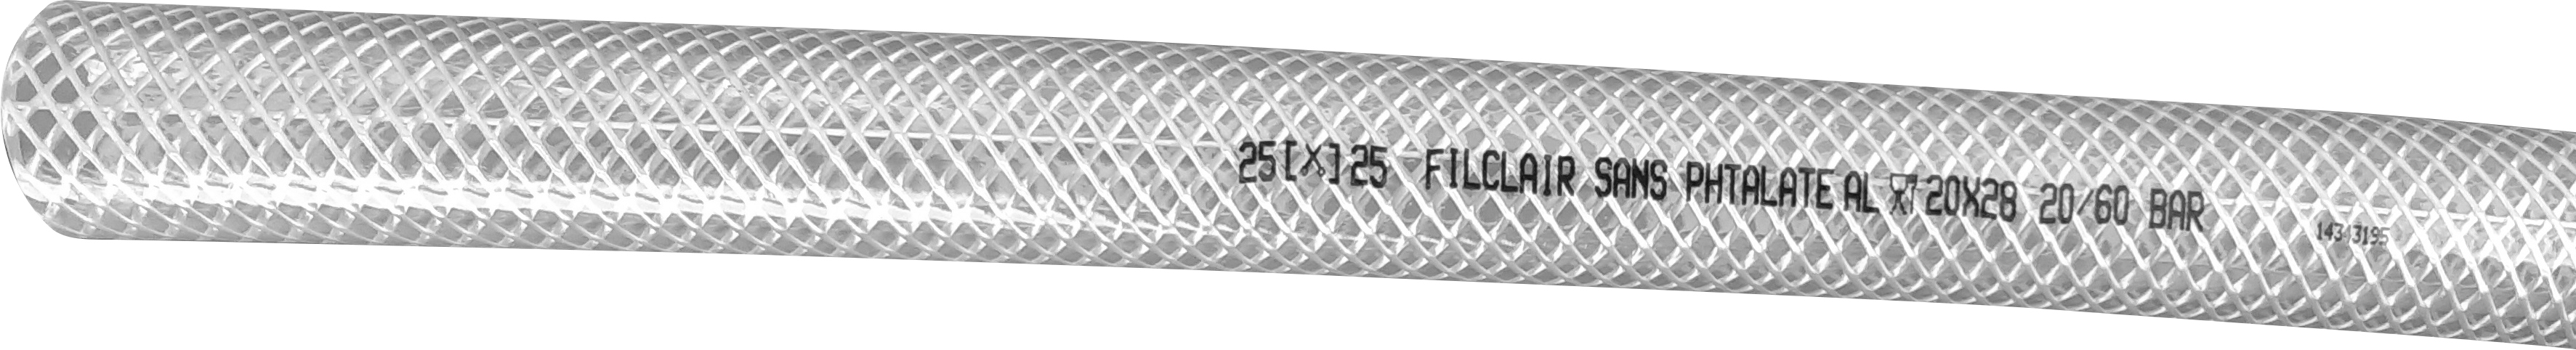 Tuyau souple FILCLAIR alimentaire transparent 6 x 12 mm - couronne de 25m